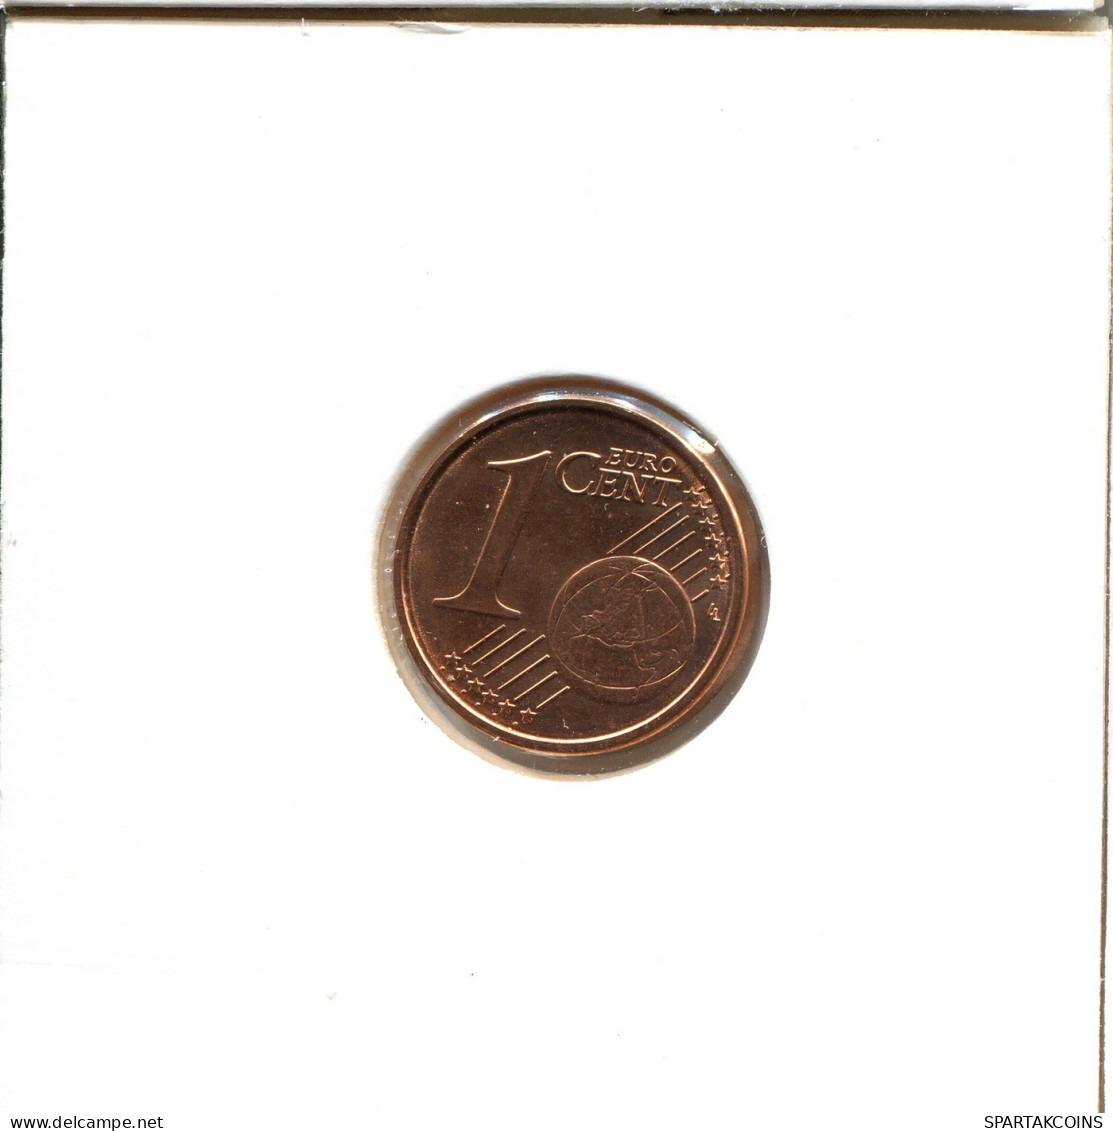 1 EURO CENT 2014 ITALY Coin #EU220.U.A - Italien